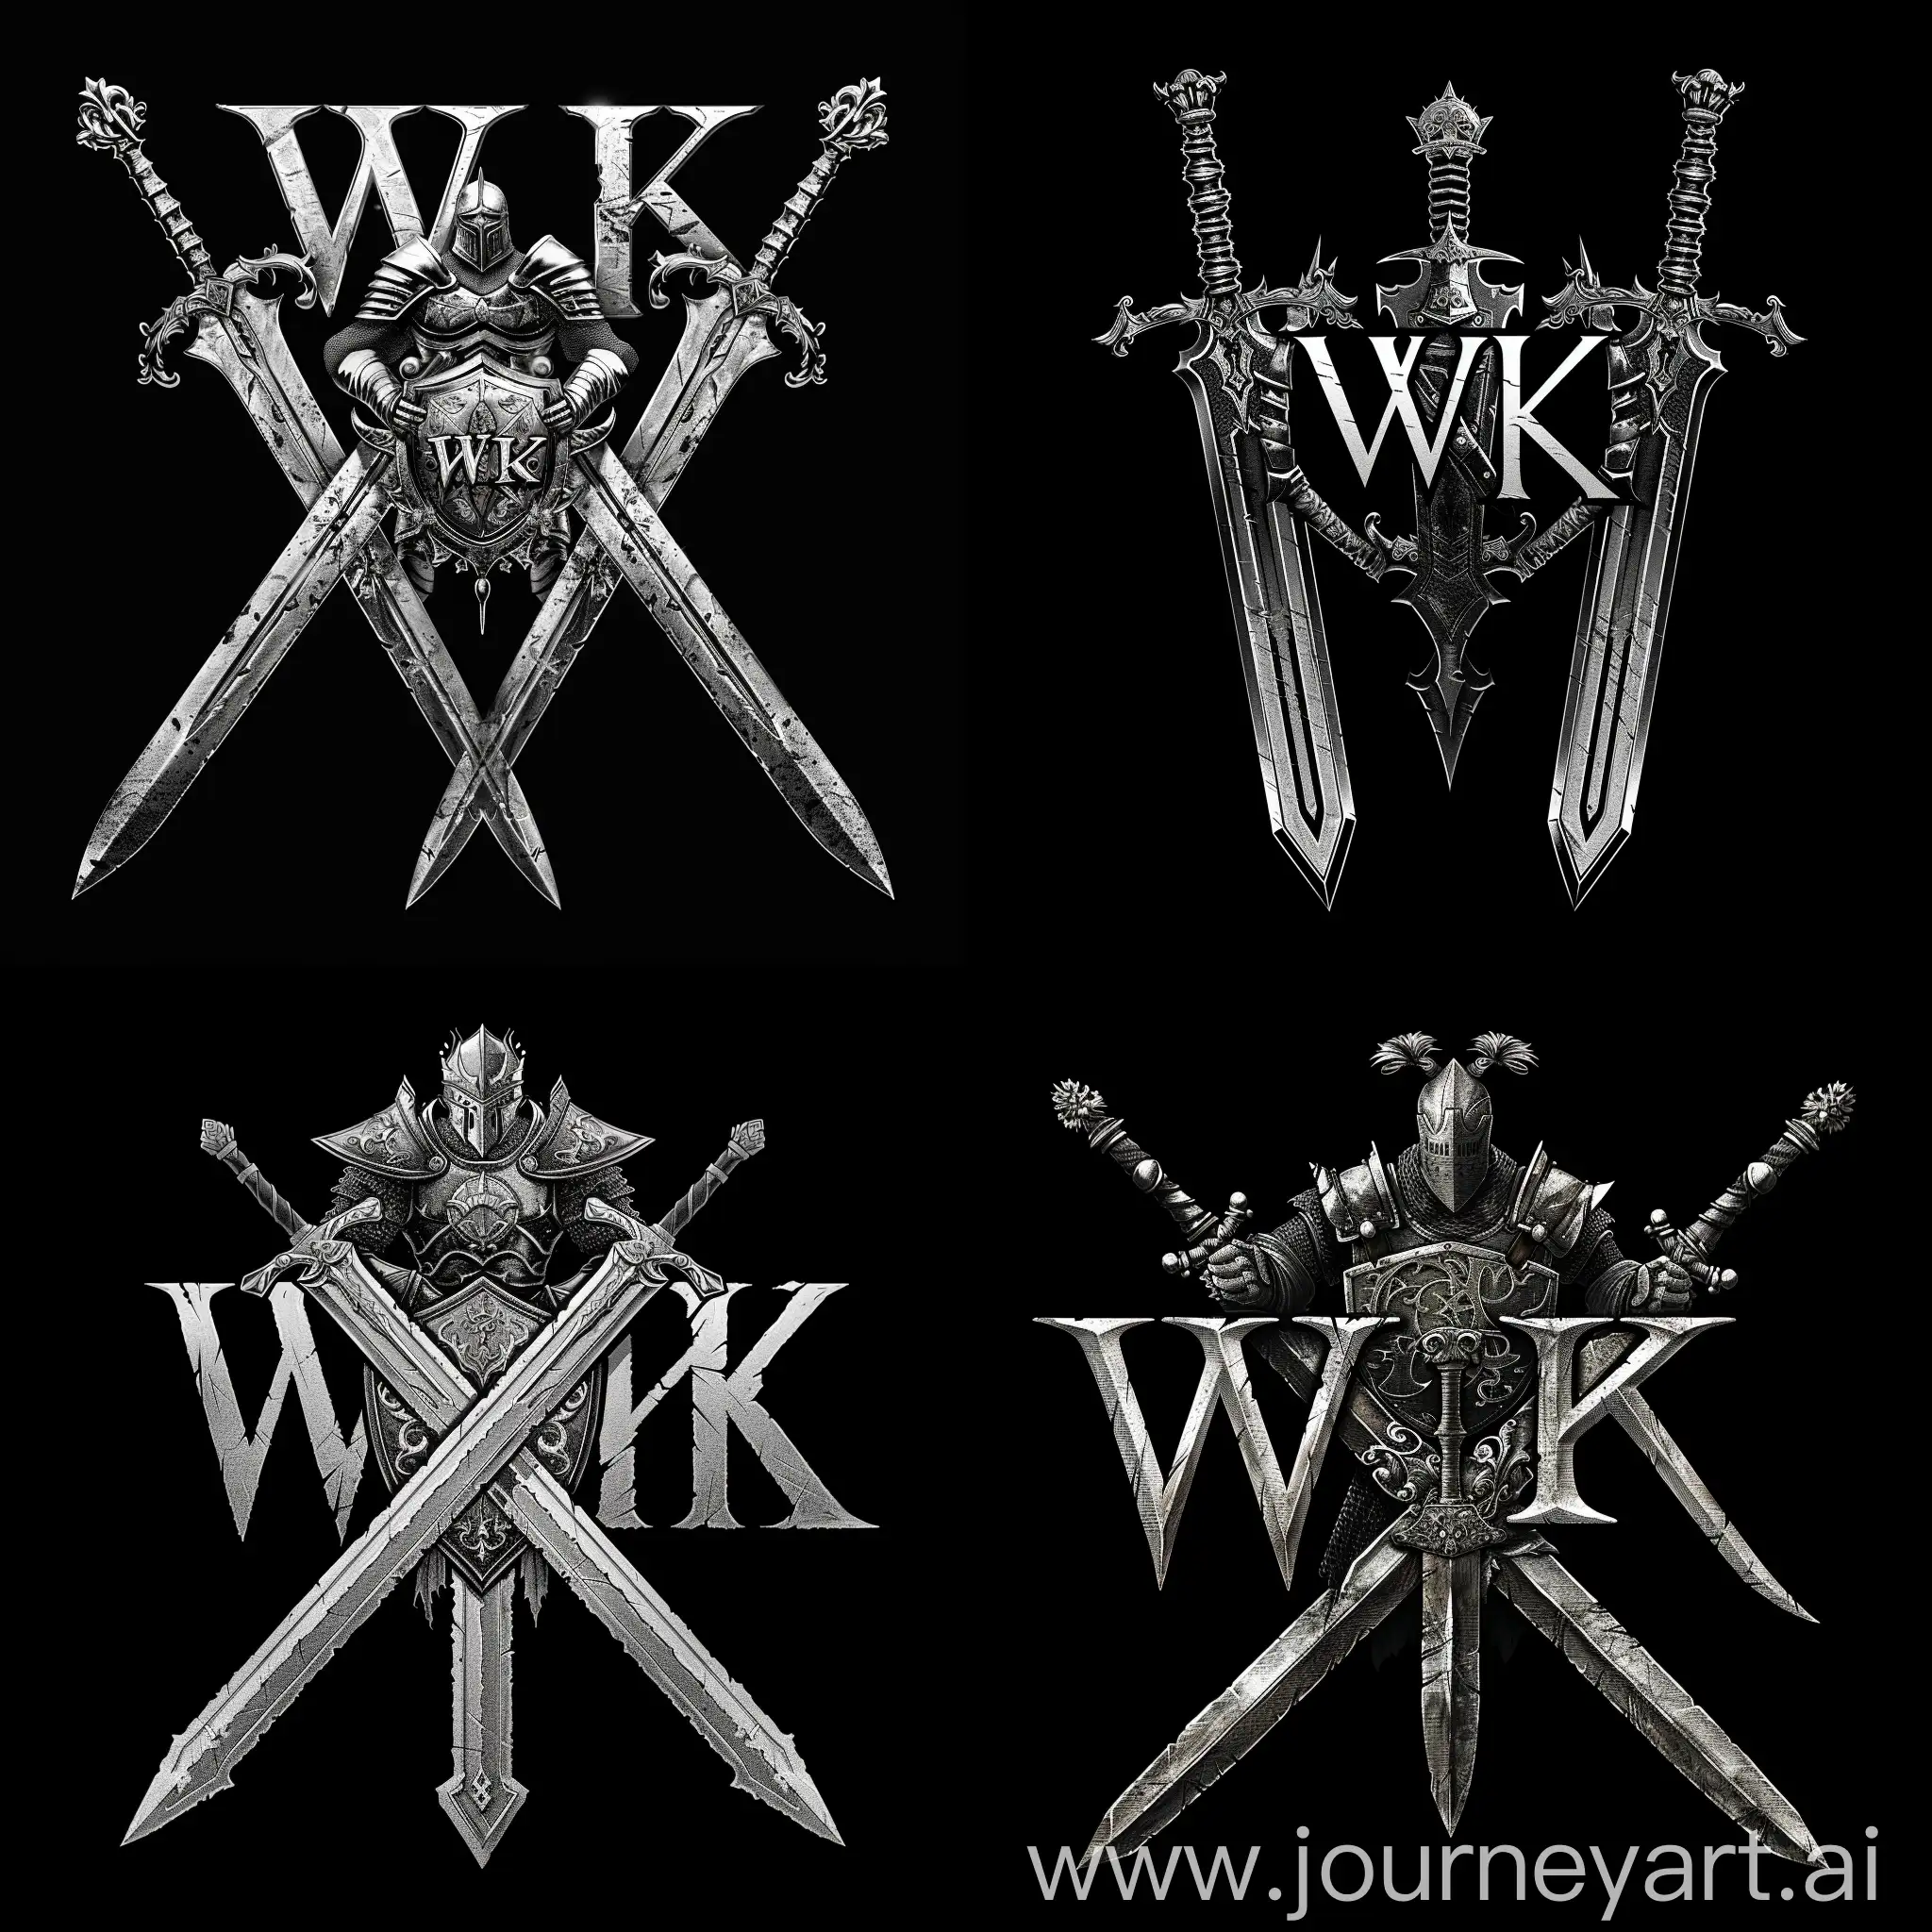 логотип "WK", где буквы "WK" стилизованы в форме двух переплетающихся мечей с орнаментами на лезвиях, между мечами изображен белый рыцарь в боевой позе держащий в руках щит и меч, рыцарь представлен в доспехах с символикой, отражающей его мощь и благородство, цветовая гамма черный и серебристый для мечей, а белый для образа рыцаря, готический шрифт "WK" в форме мечей